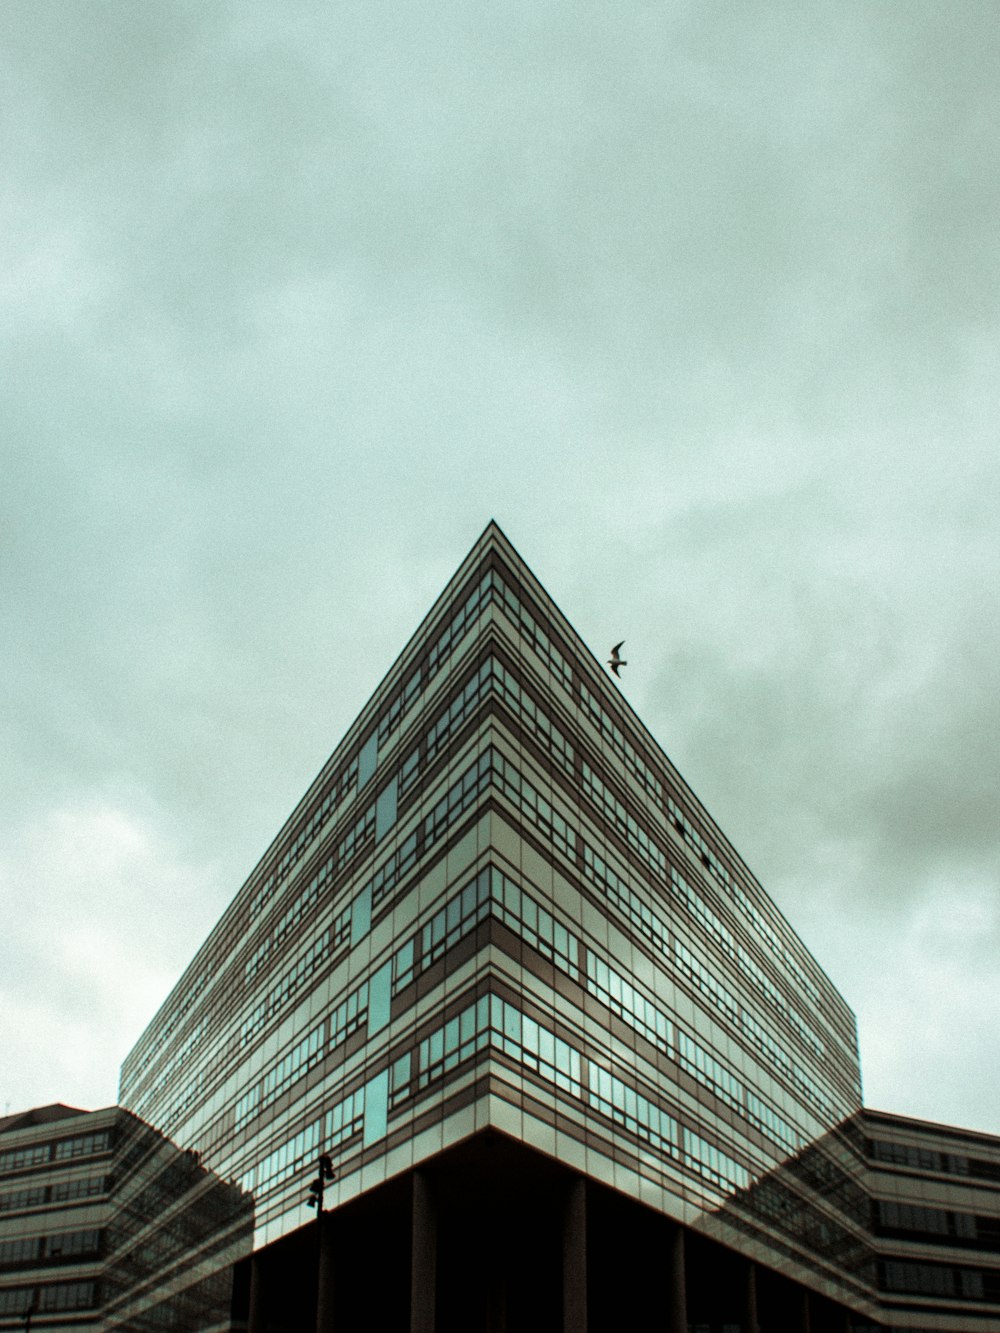 Nimbus 구름 아래 건물의 로우 앵글 사진